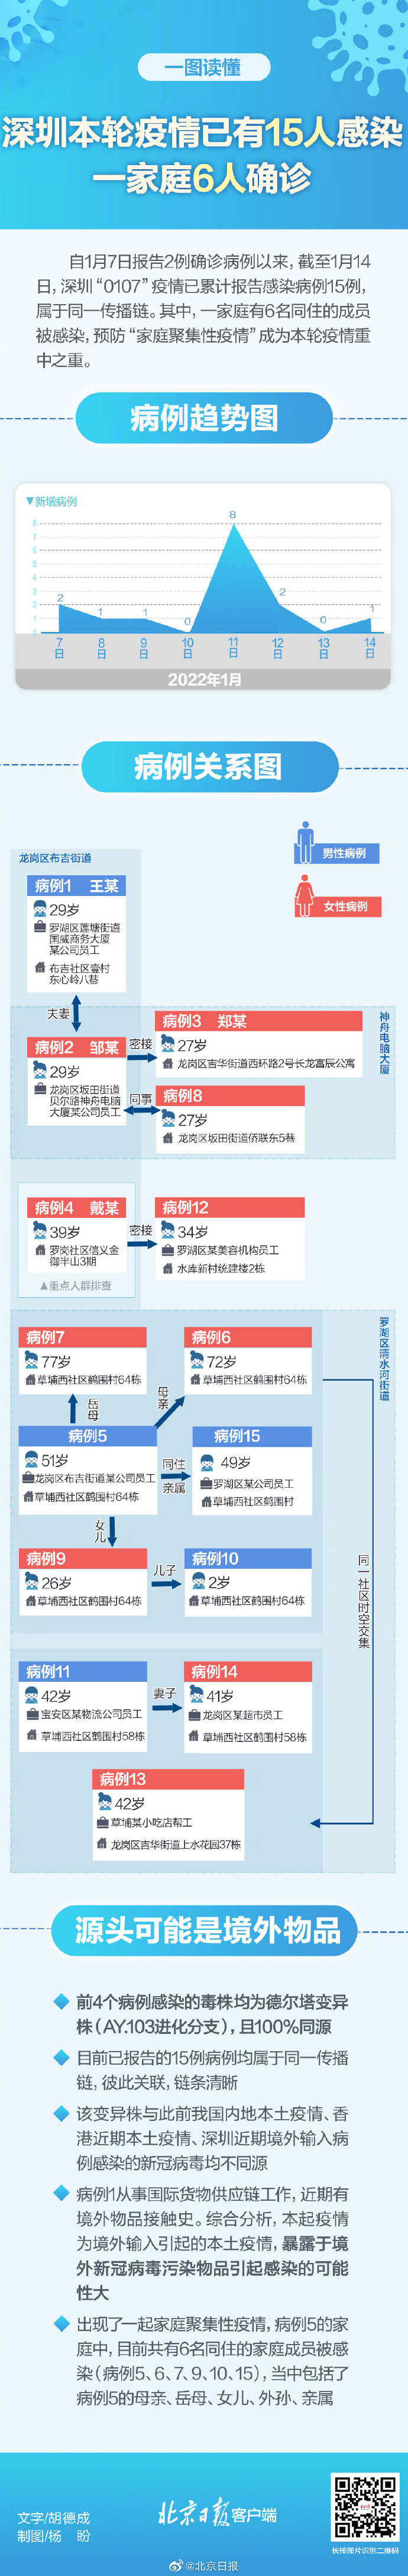 深圳本轮疫情已有15人感染 一家6人确诊